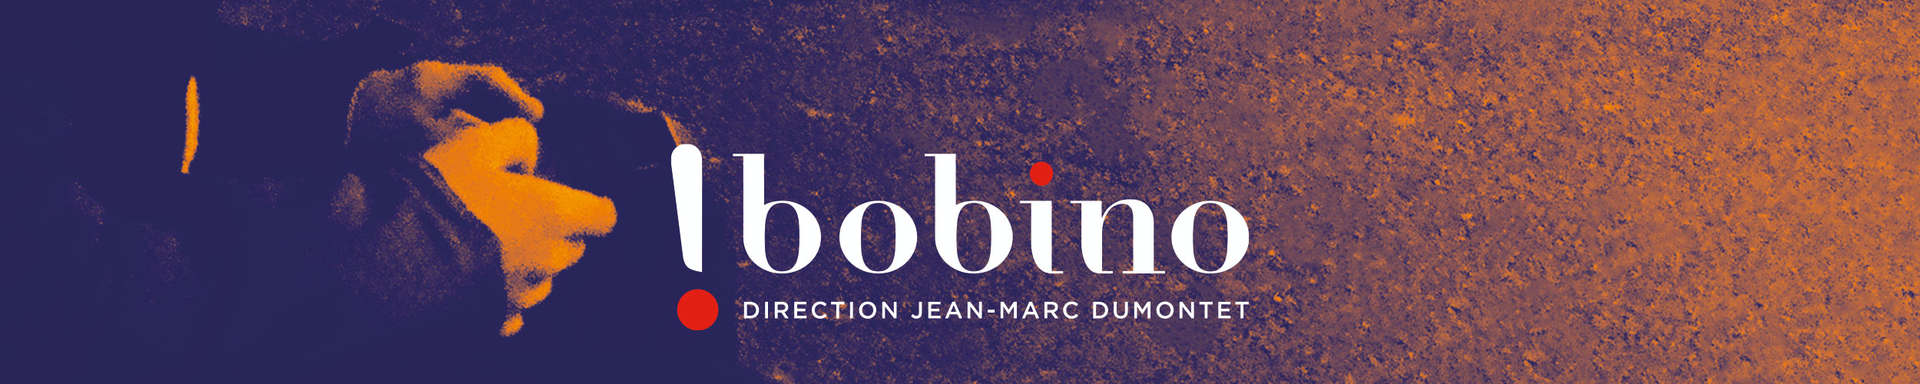 Bandeau ''Théâtre Bobino'' - Jean-Marc Dumontet Production